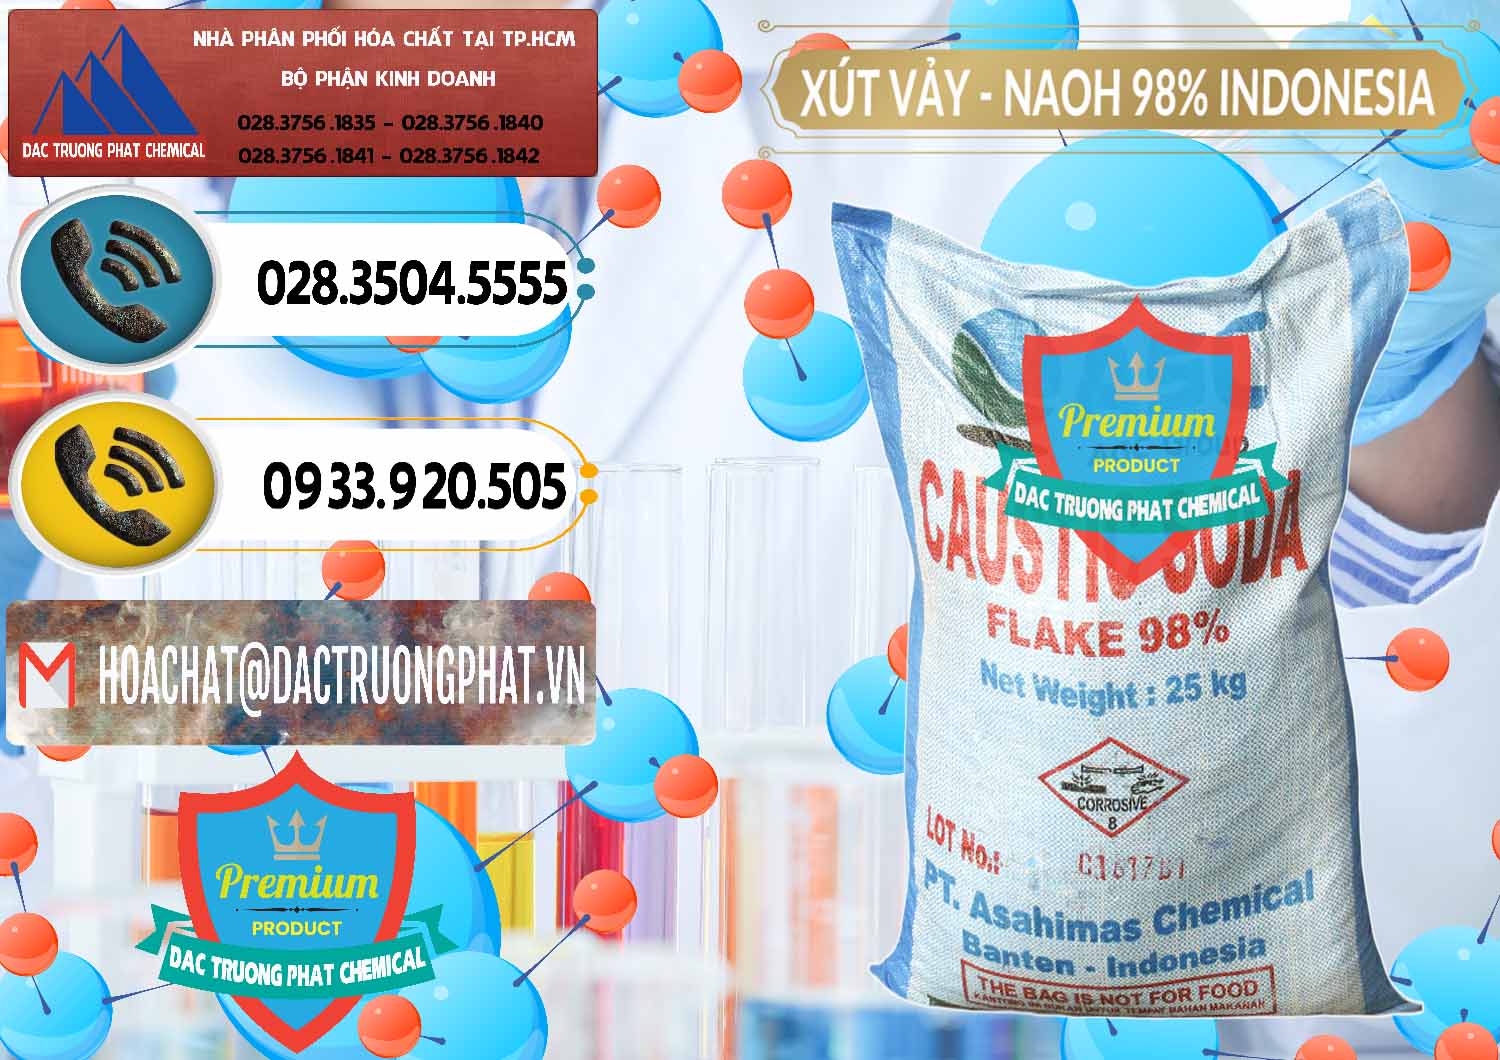 Cty chuyên kinh doanh - bán Xút Vảy - NaOH Vảy 98% ASC Indonesia - 0172 - Nơi phân phối _ cung cấp hóa chất tại TP.HCM - hoachatdetnhuom.vn